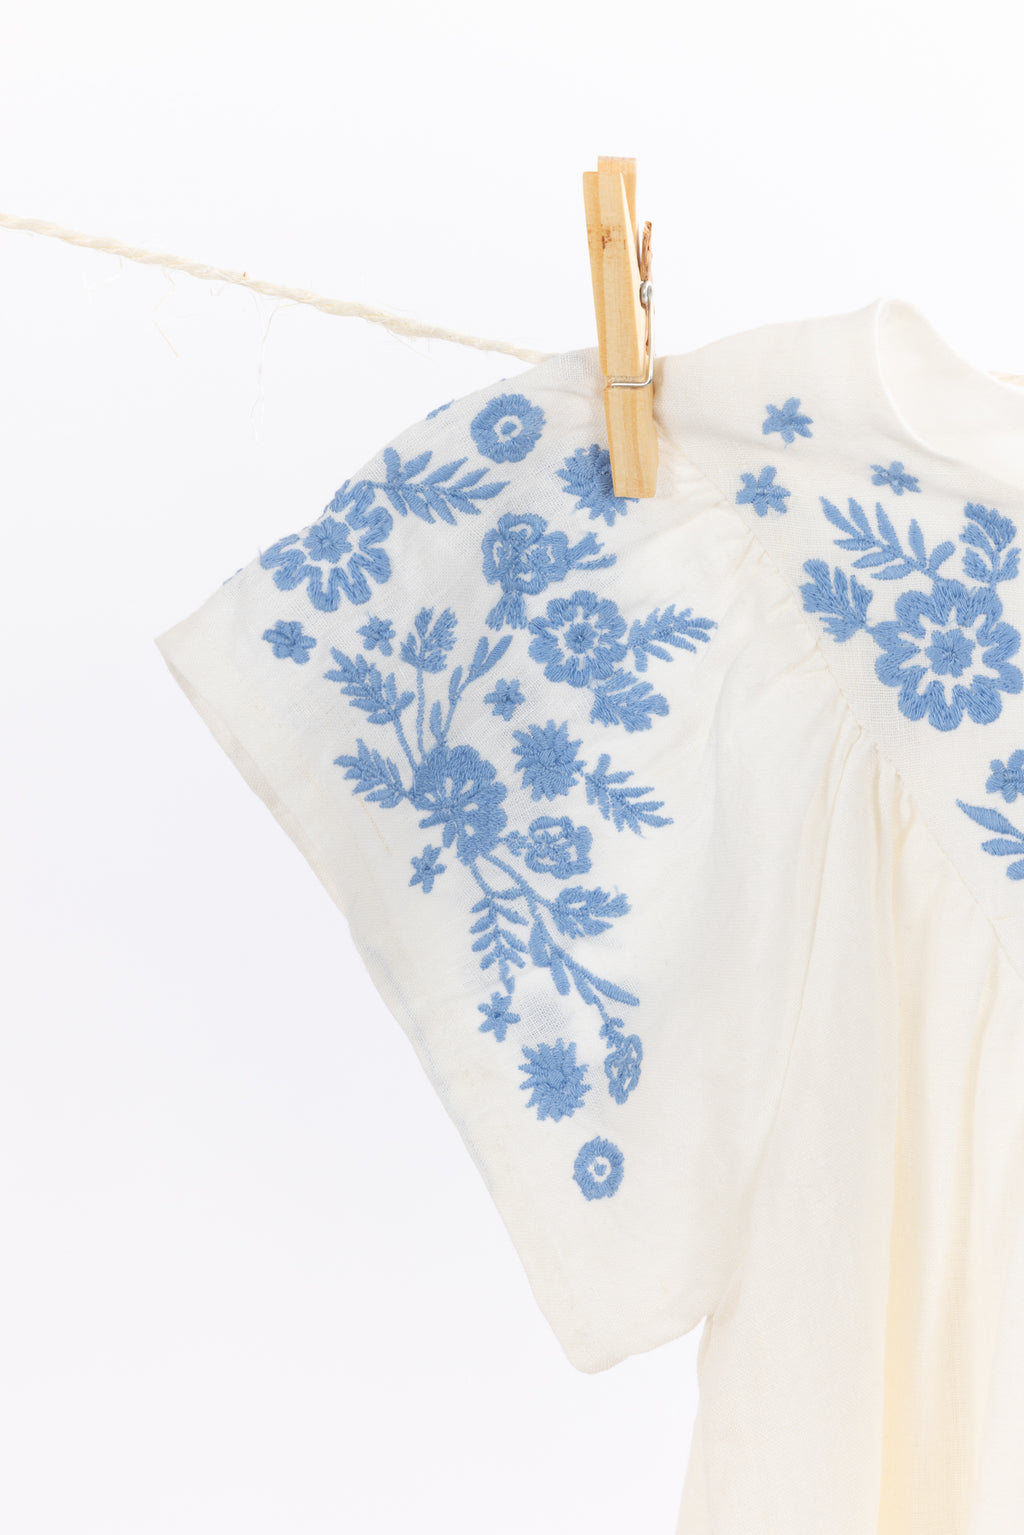 Dress - Ecru embroidery Linen